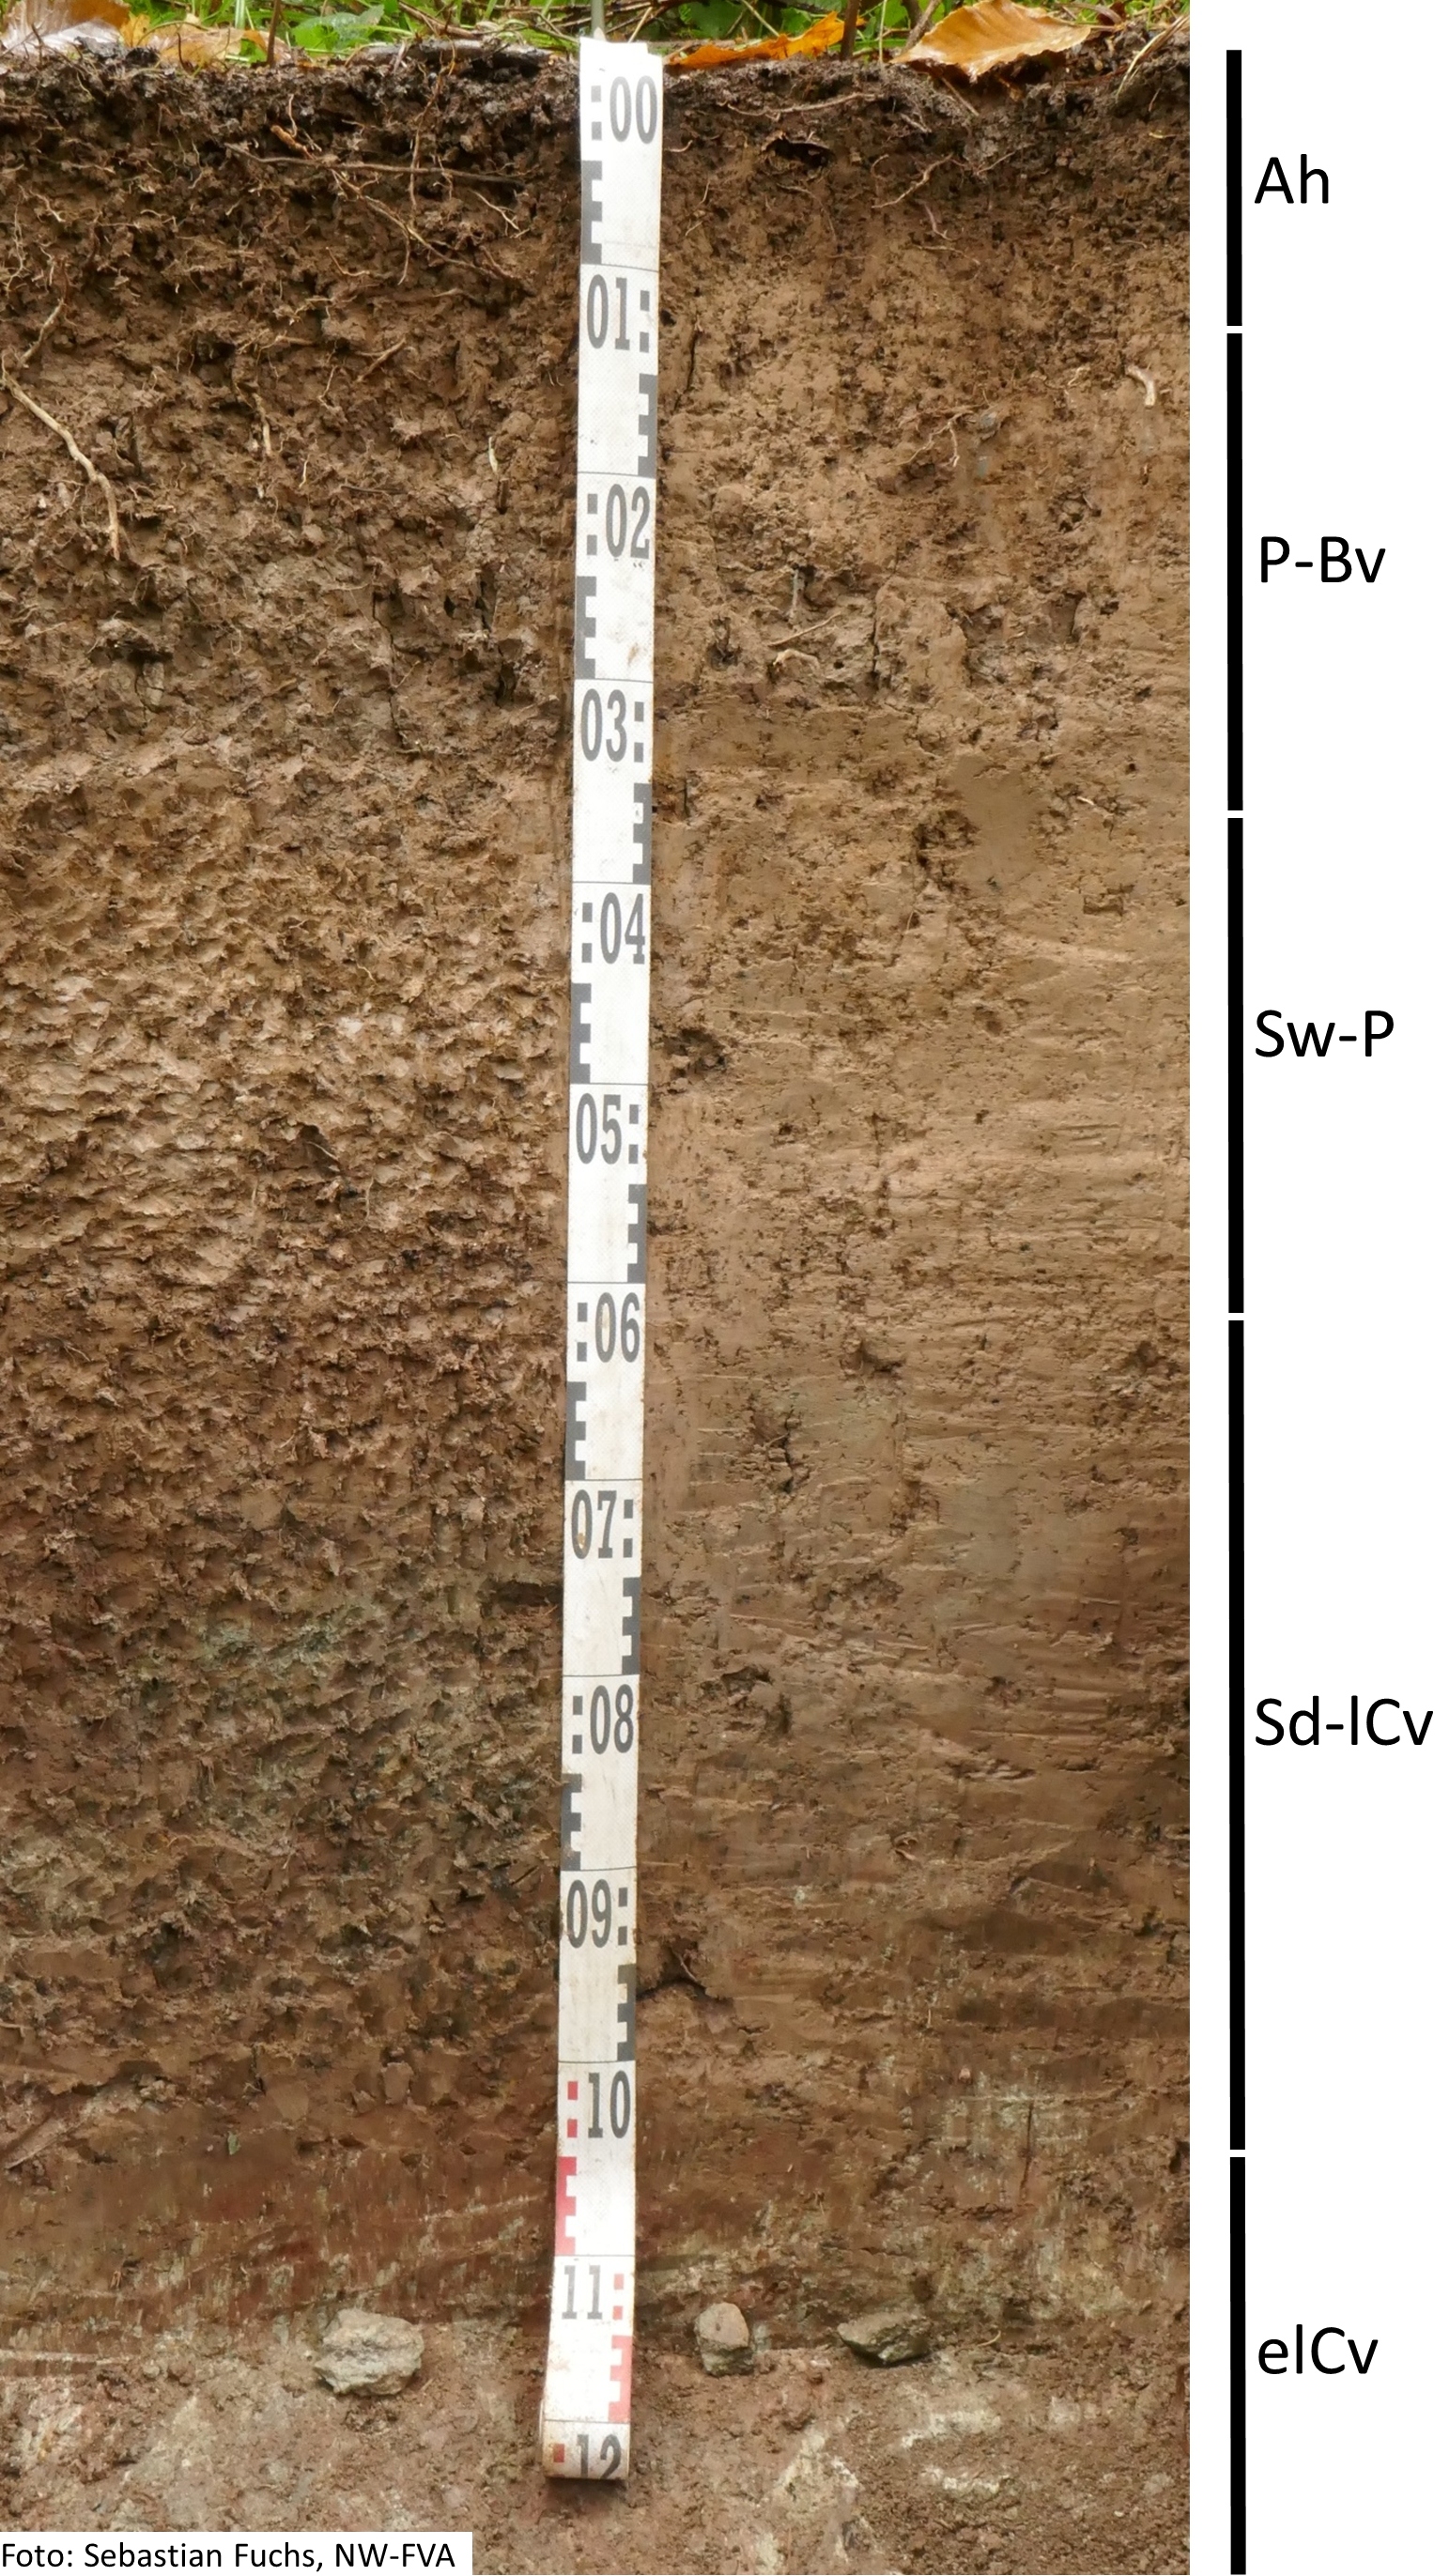 Das Foto zeigt einen senkrechten Schnitt durch den Boden der Untersuchungsfläche. Das Bodenprofil enthält folgende Bodenhorizonte: Ah, P-Bv, Sw-P, Sd-lCv, elCv